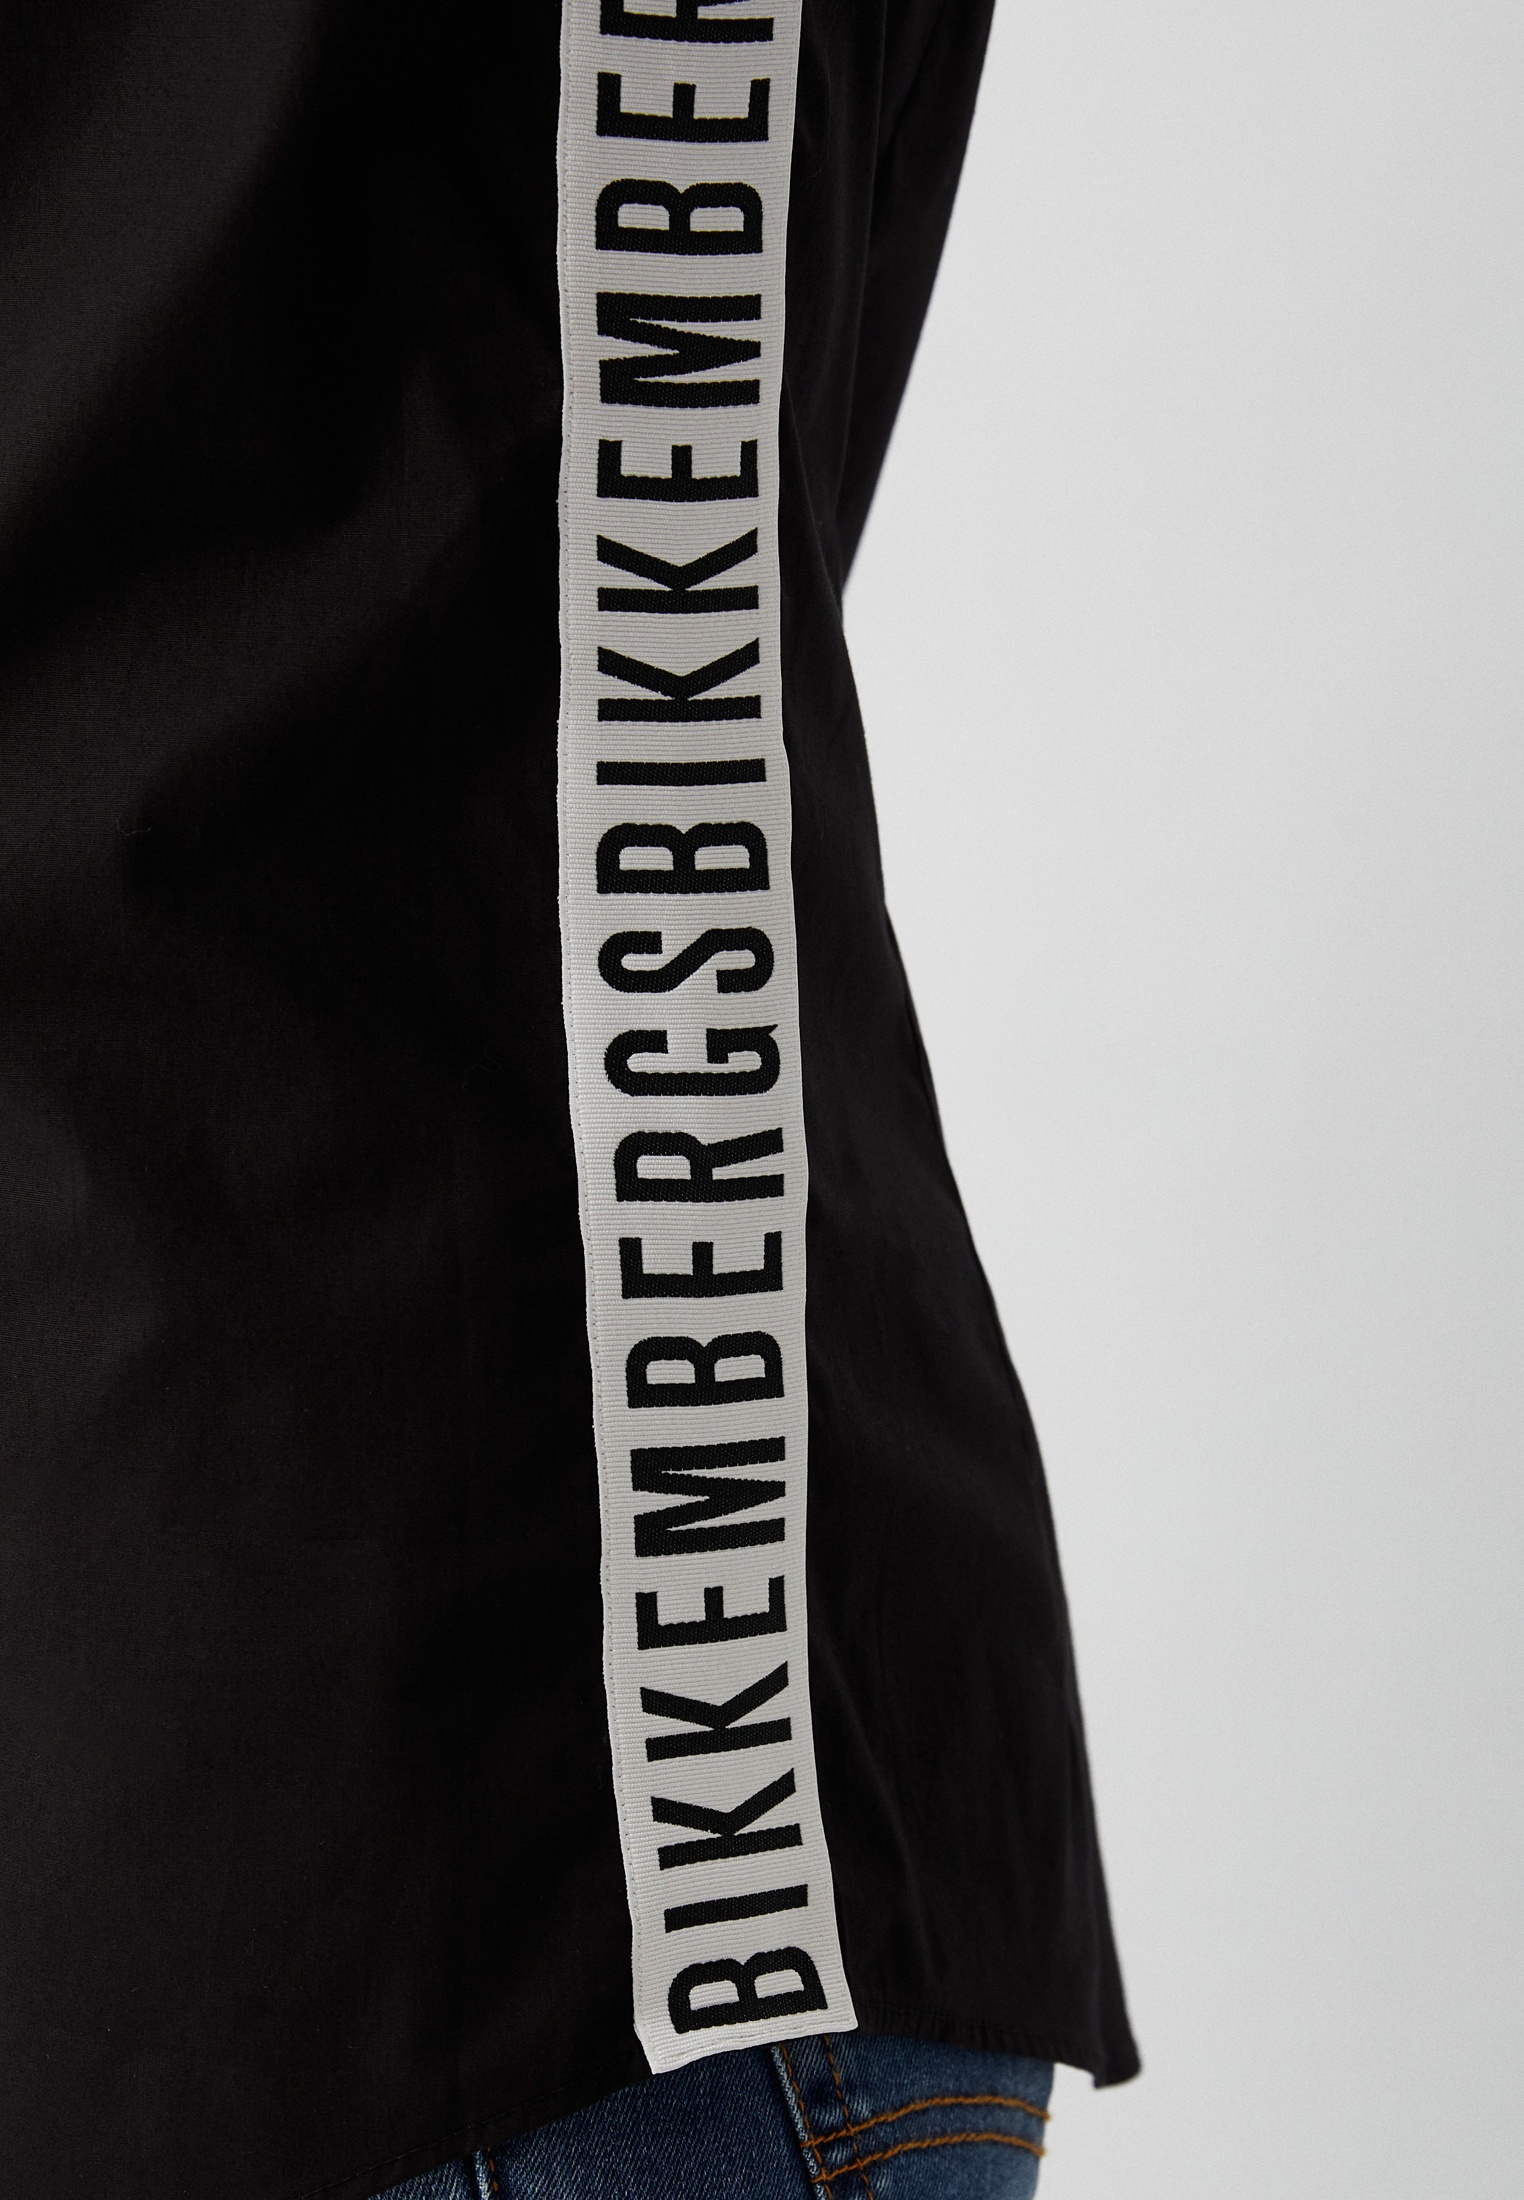 Рубашка с длинным рукавом Bikkembergs (Биккембергс) C C 055 81 S 2931: изображение 8